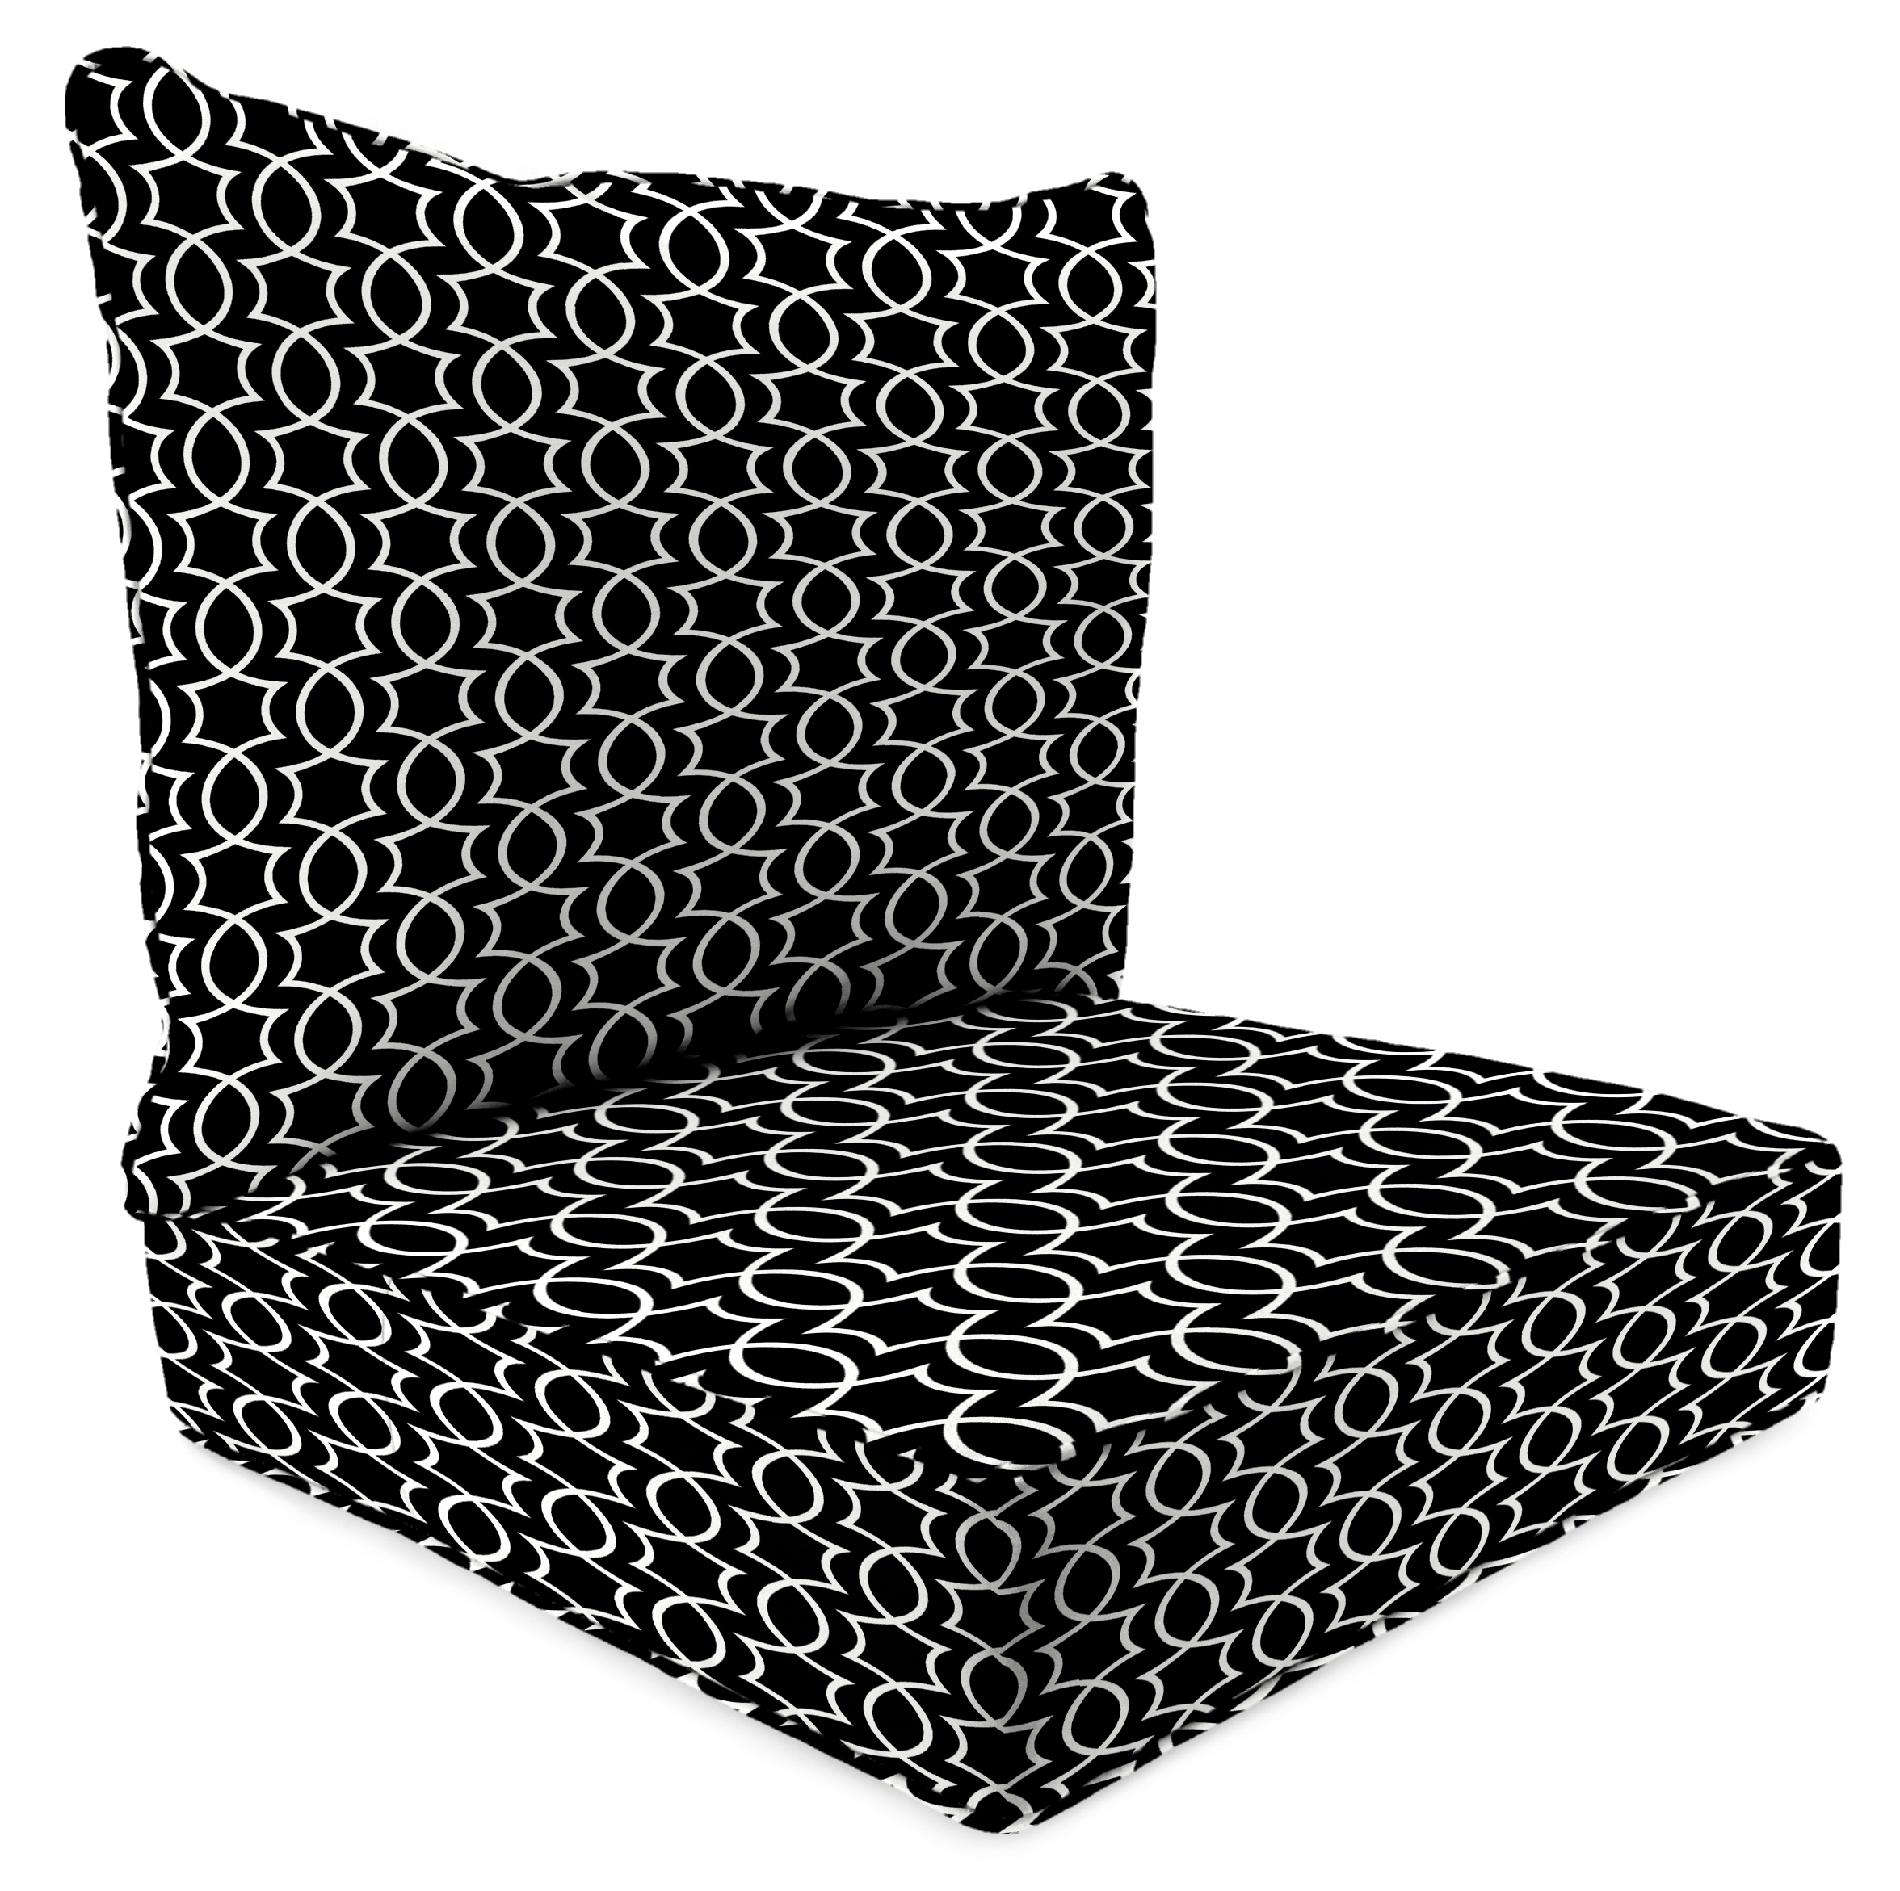 2 Piece Deep Seat Chair Cushion in Titan Onyx